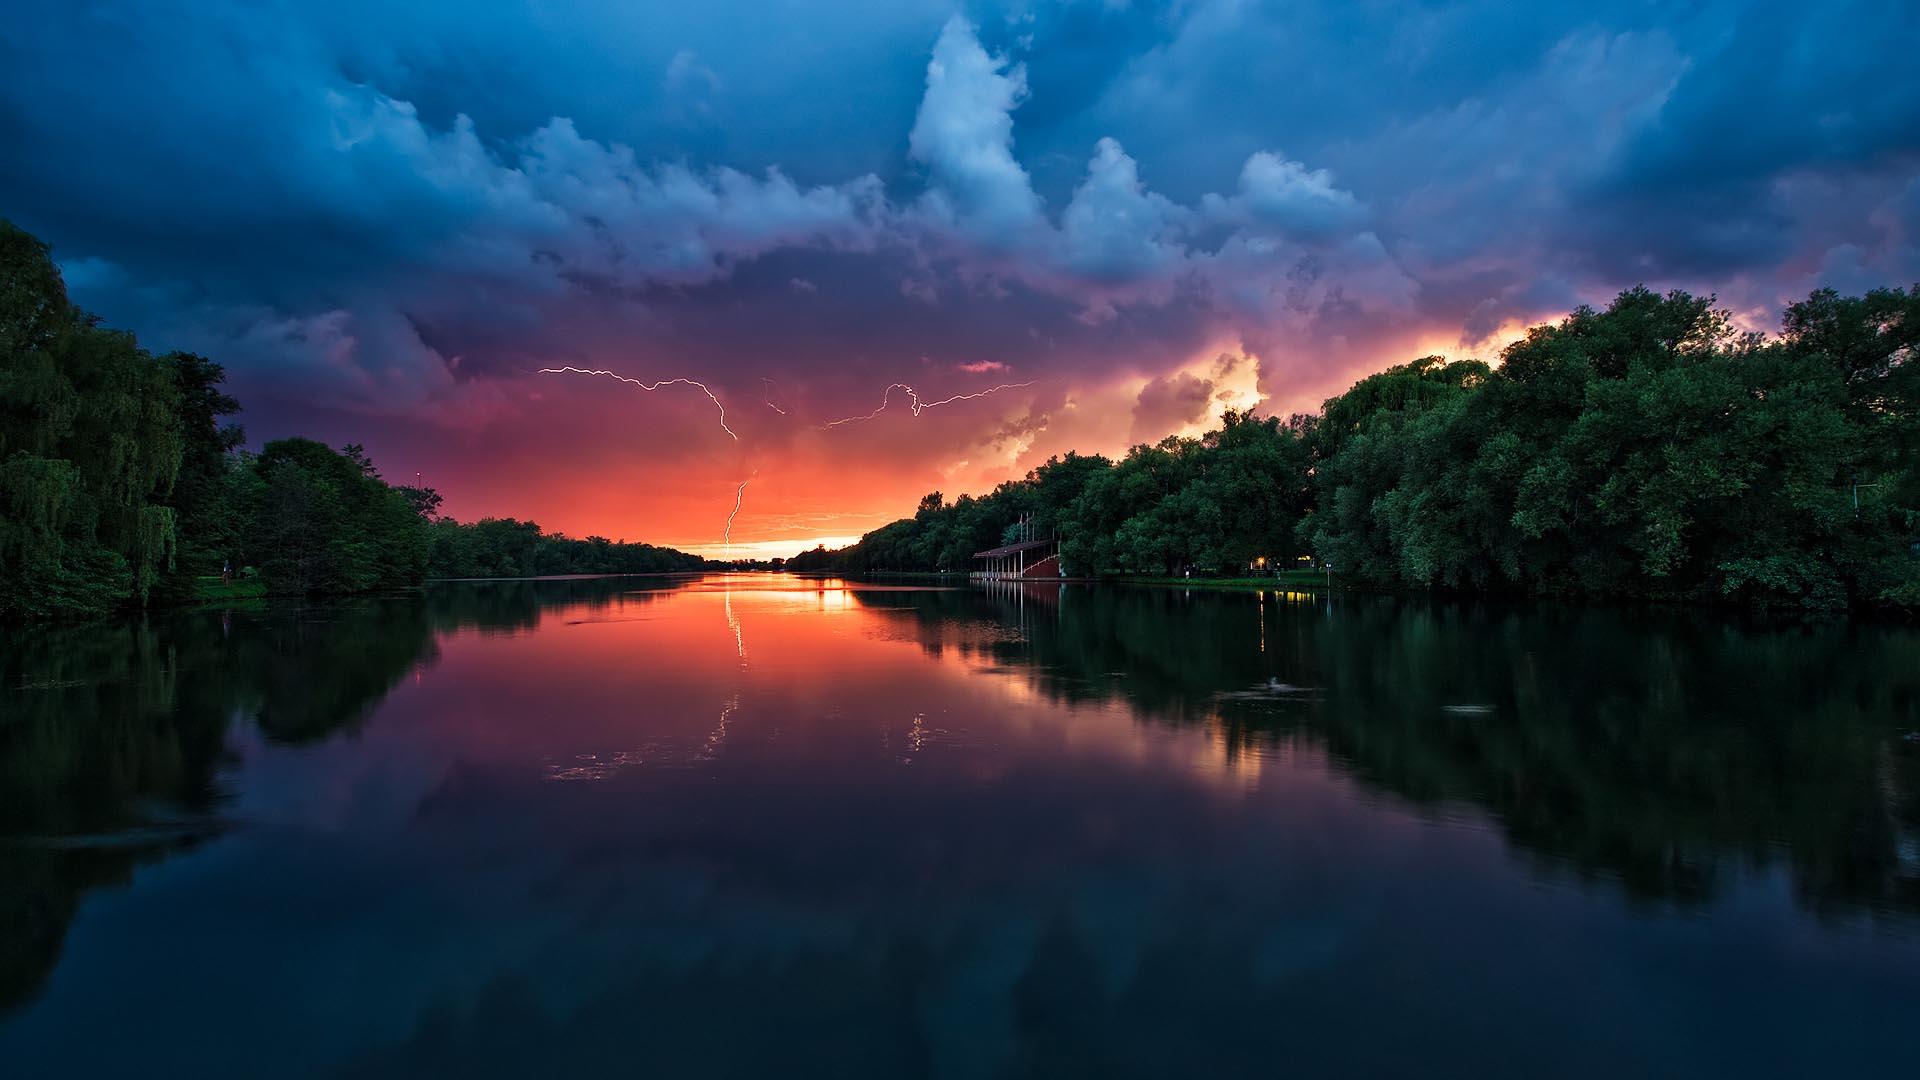 Sunset And Lightning Over The River HD Wallpaper FullHDWpp